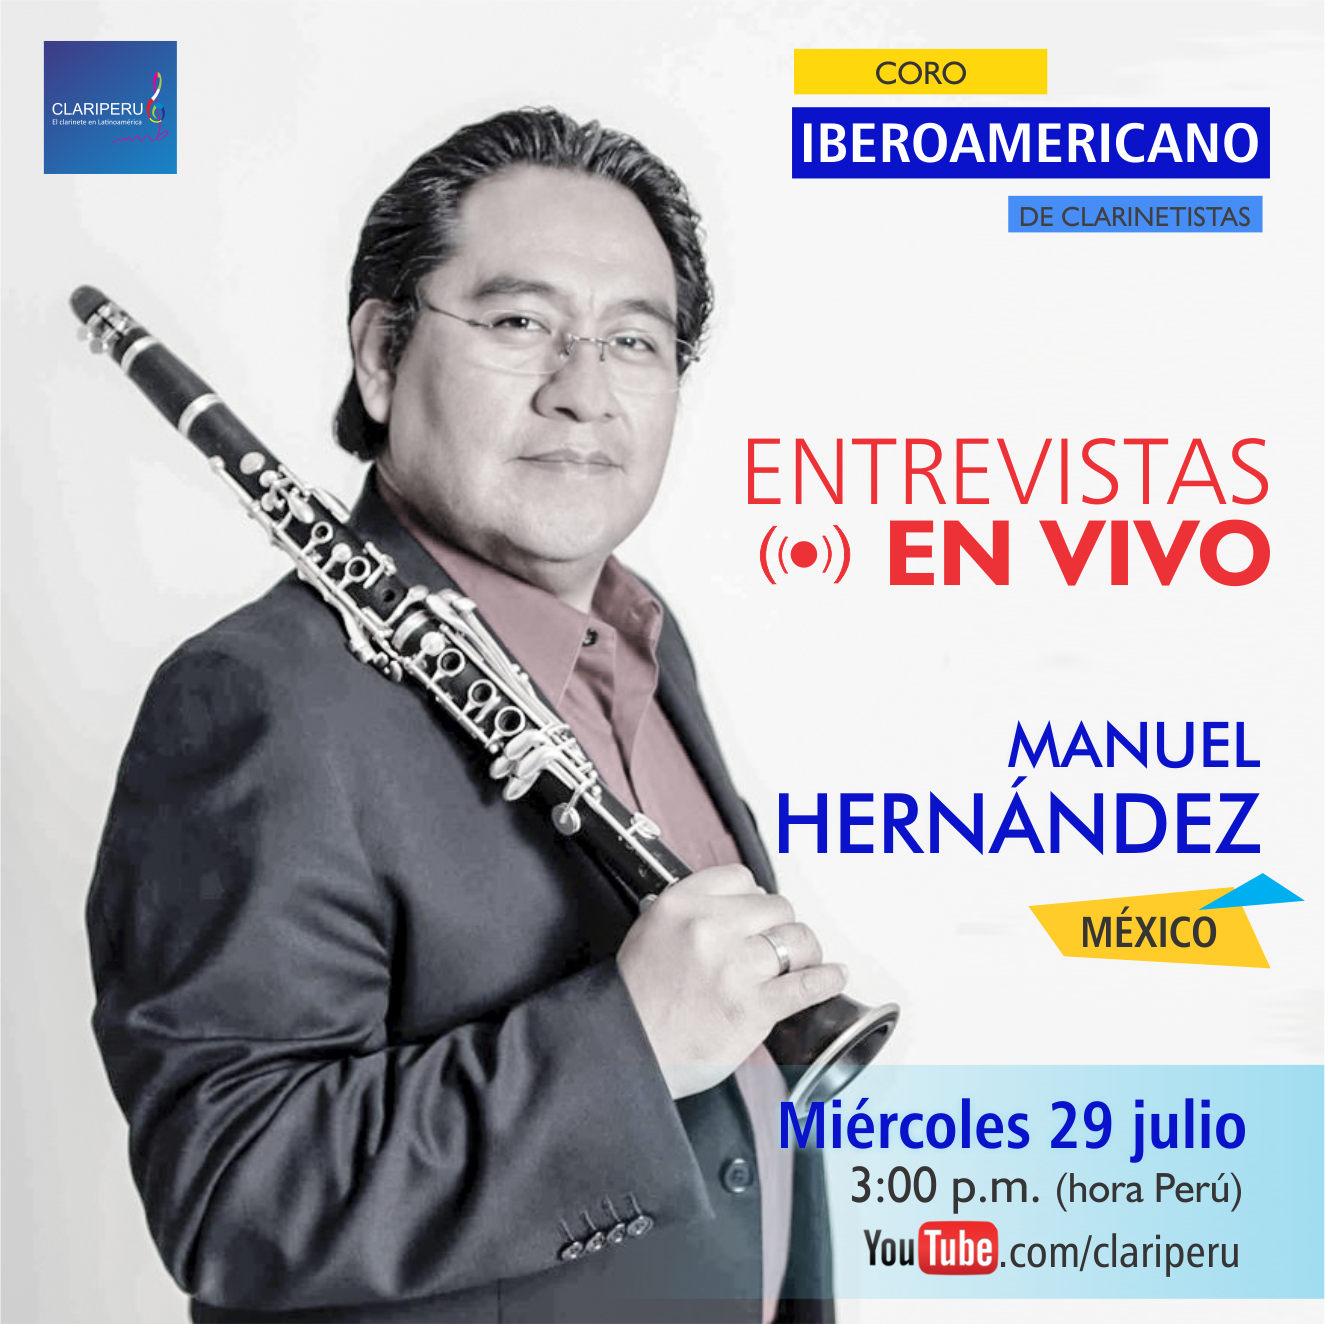 Entrevista en vivo al clarinetista Manuel Hernández de México. CLARIPERU